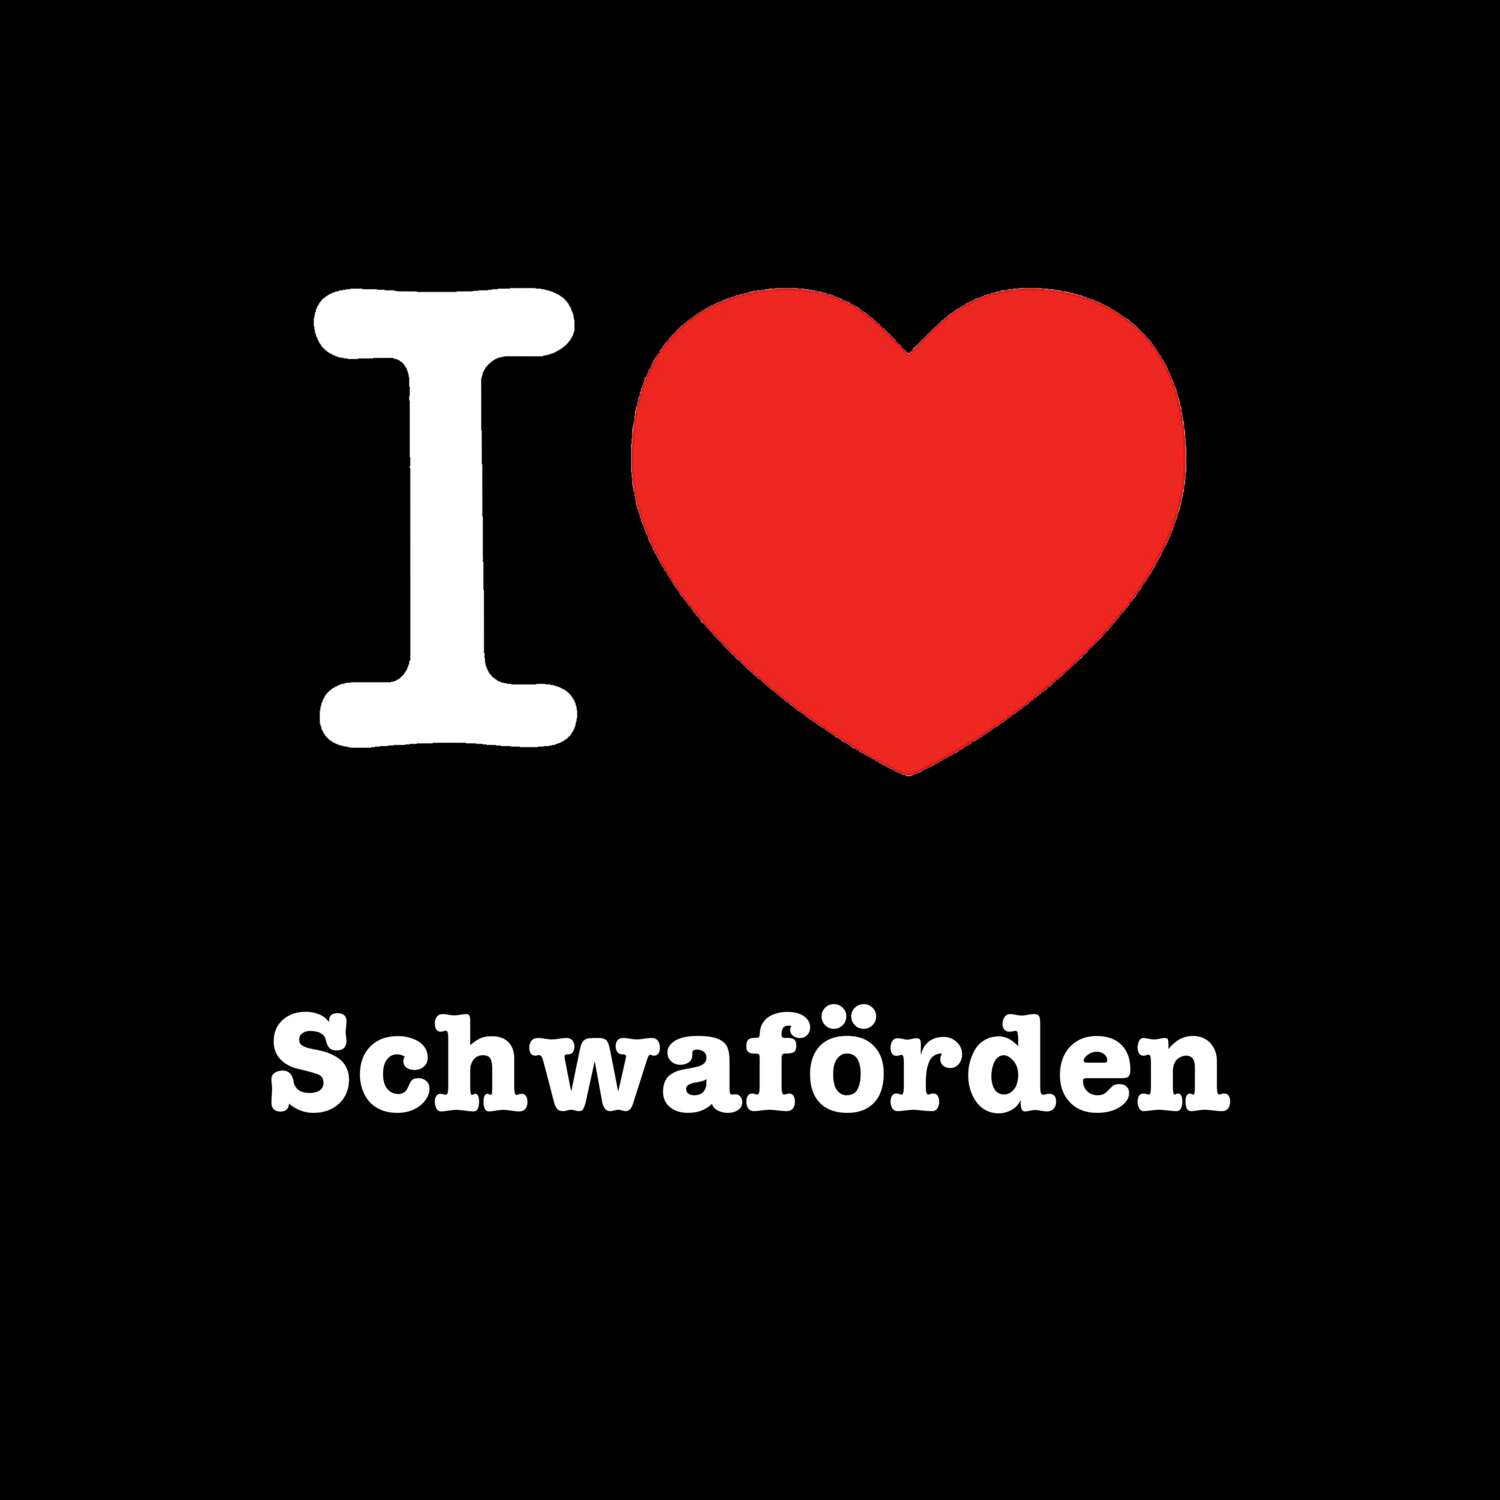 Schwaförden T-Shirt »I love«